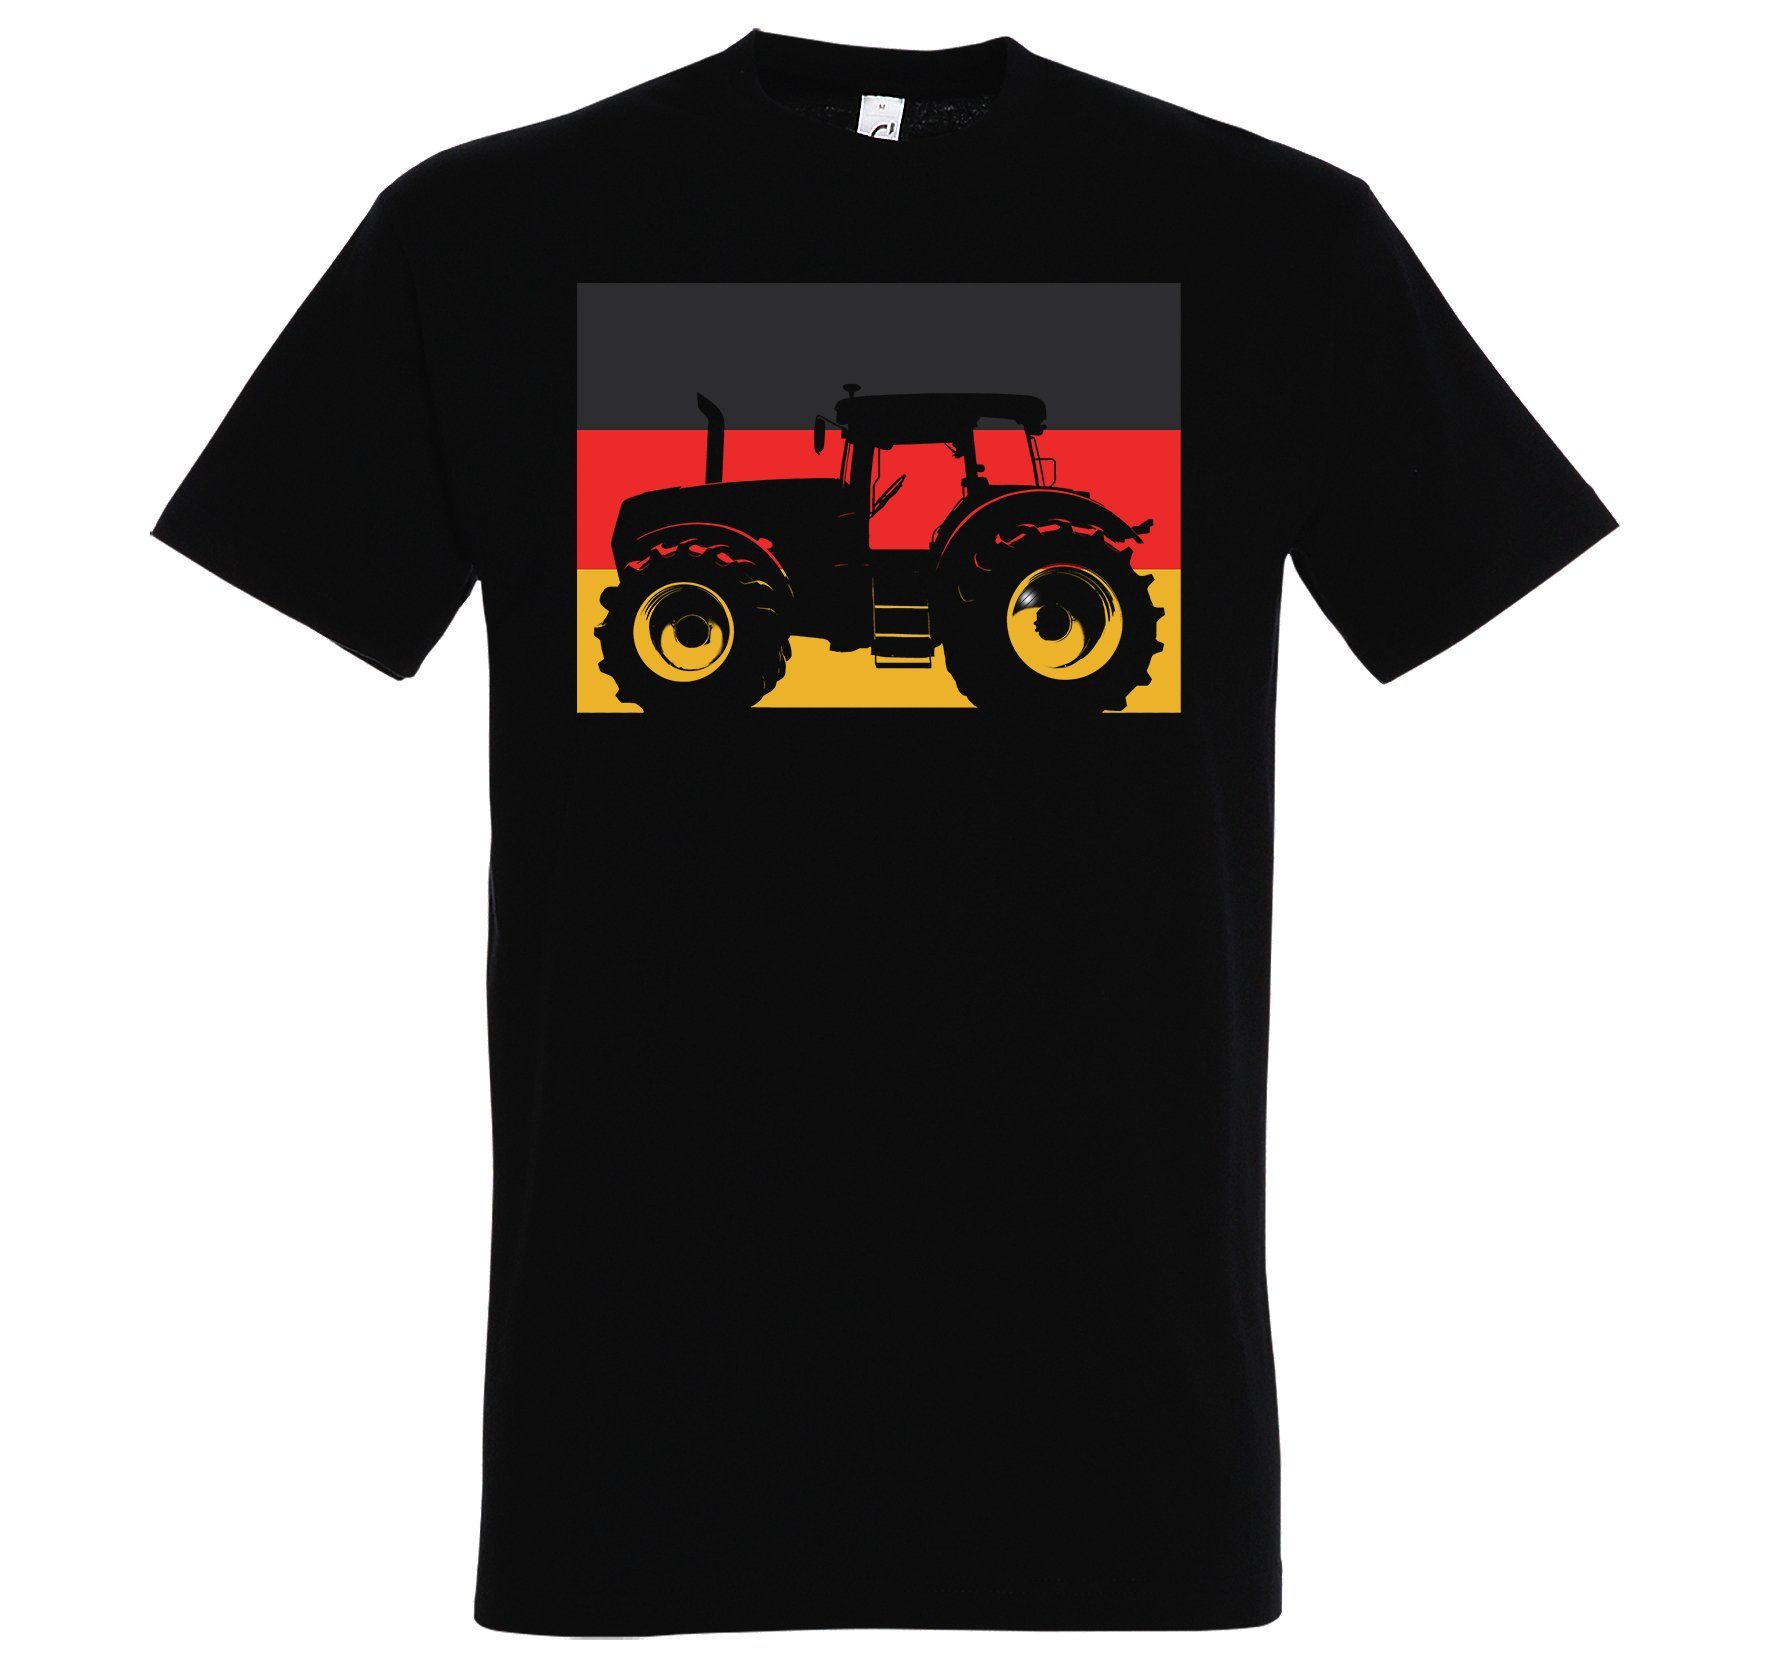 Deutschland Youth lustigem Herren Schwarz T-Shirt Designz Spruch Traktor T-Shirt mit